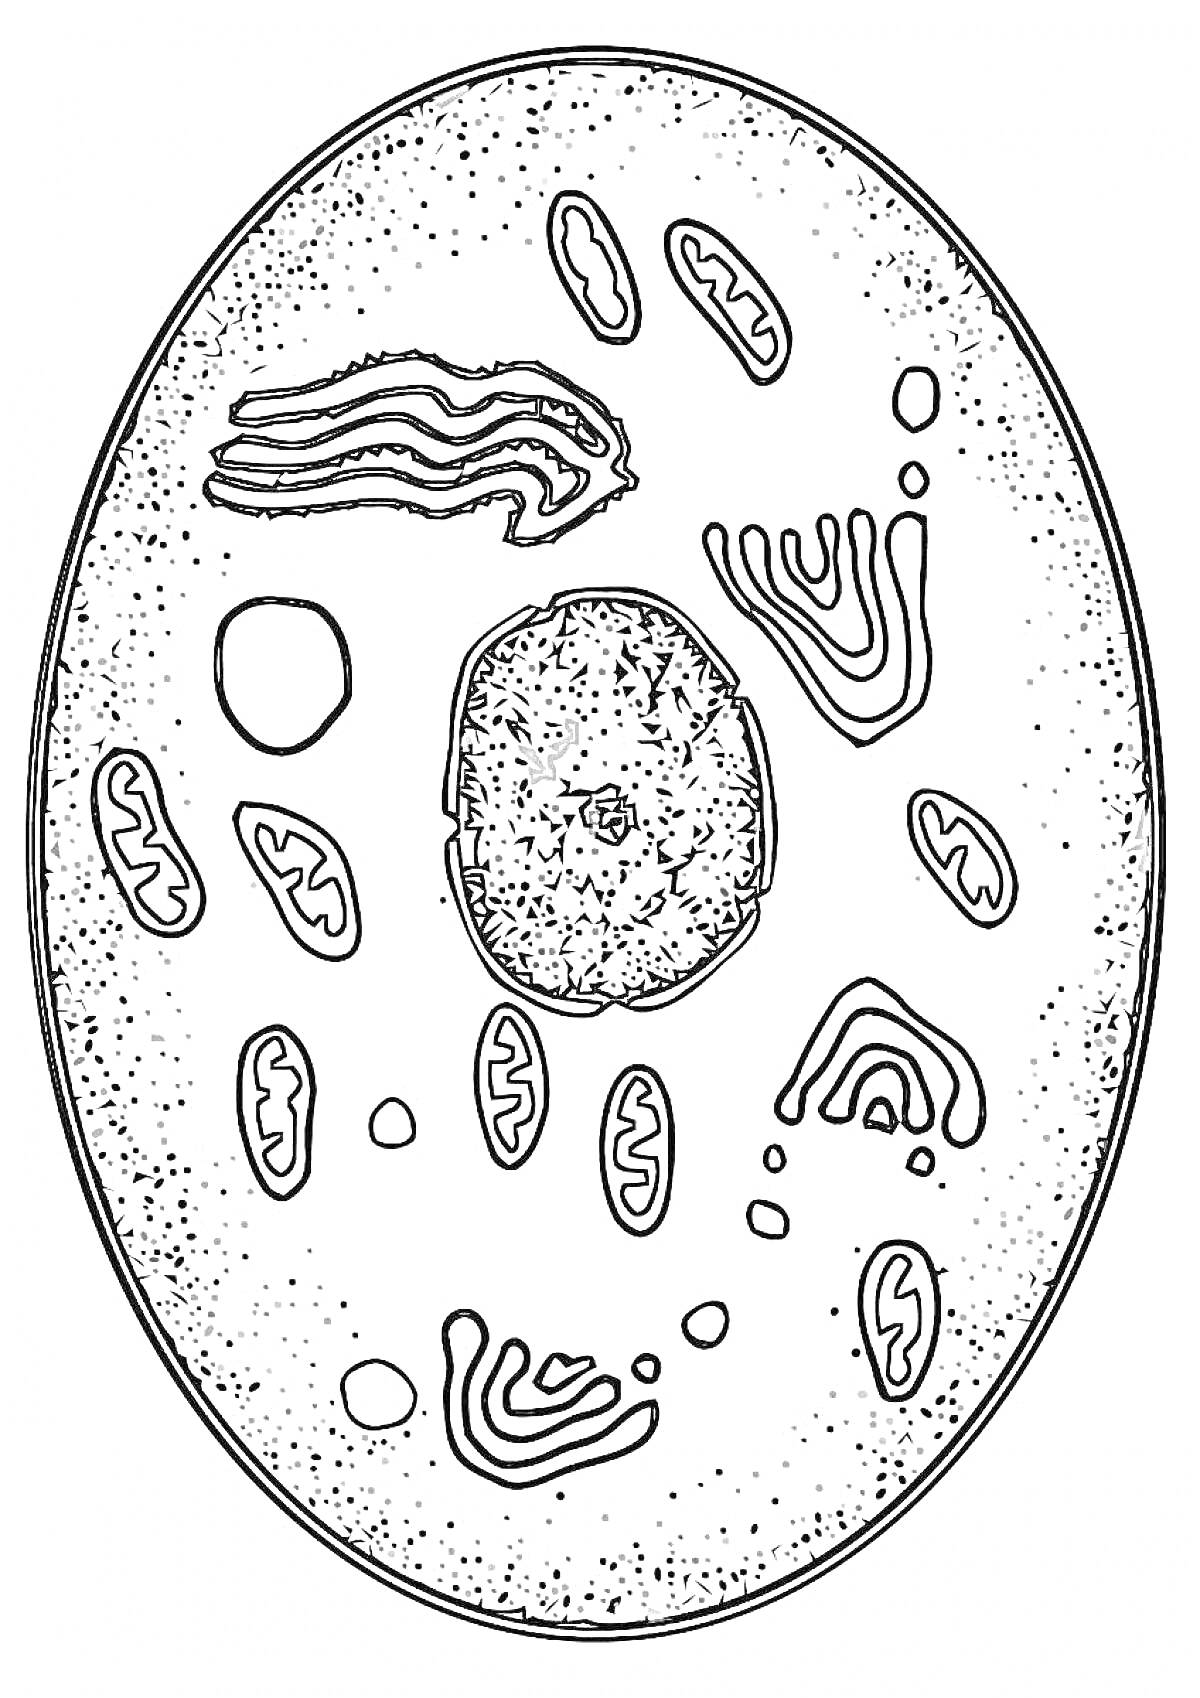 Клетка с органеллами